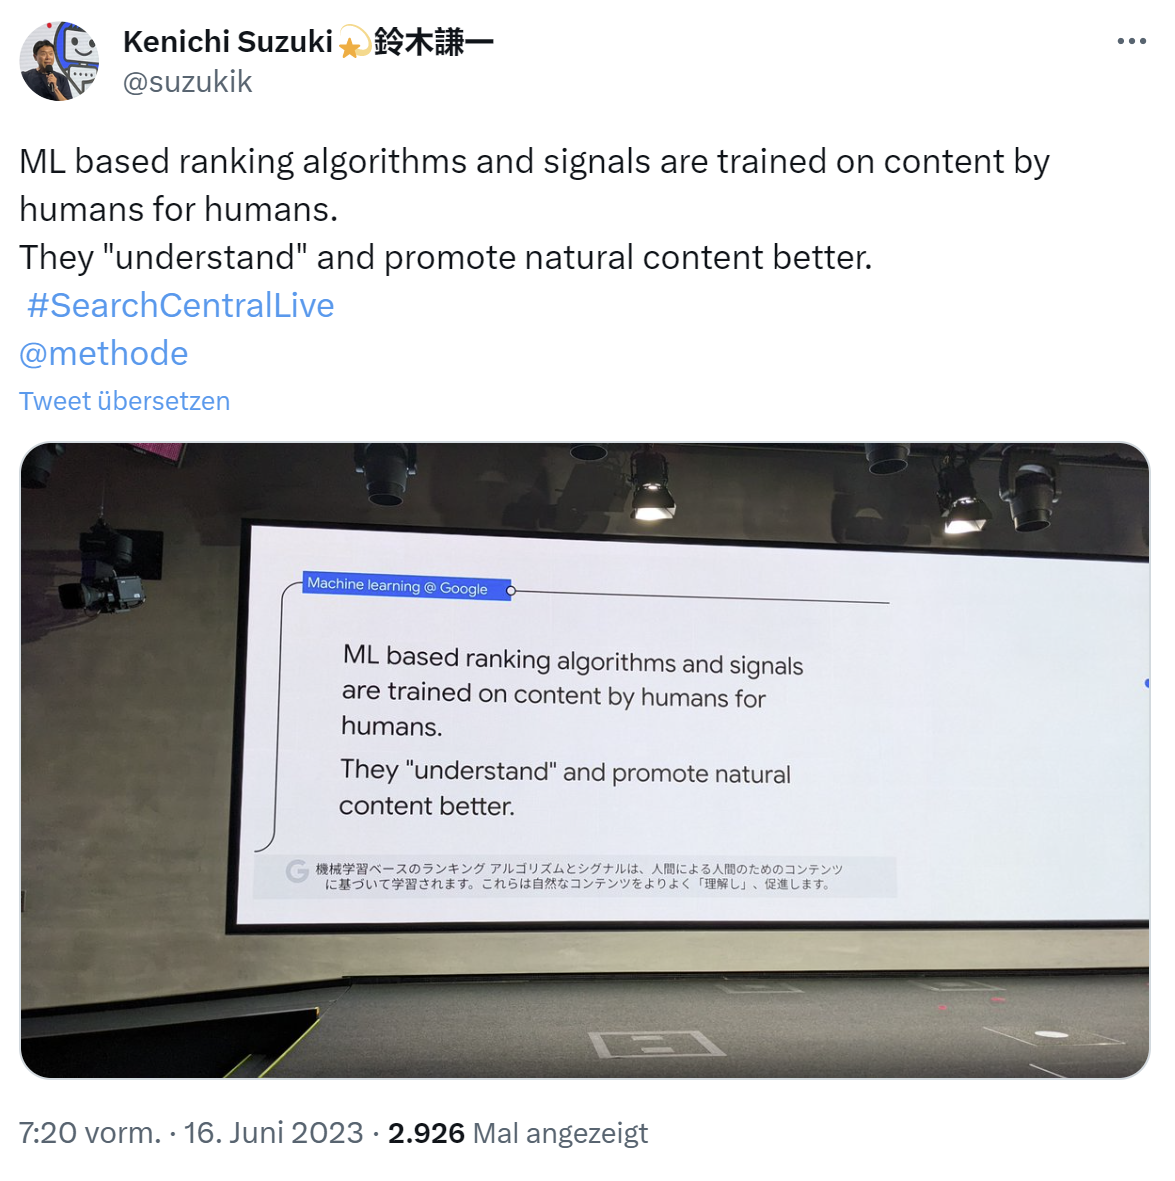 Google: Beim Trainieren von Ranking-Algorithmen mit maschinellem Lernen werden Inhalte verwendet, die von Menschen für Menschen erstellt wurden - Kenichi Suzuki auf Twitter